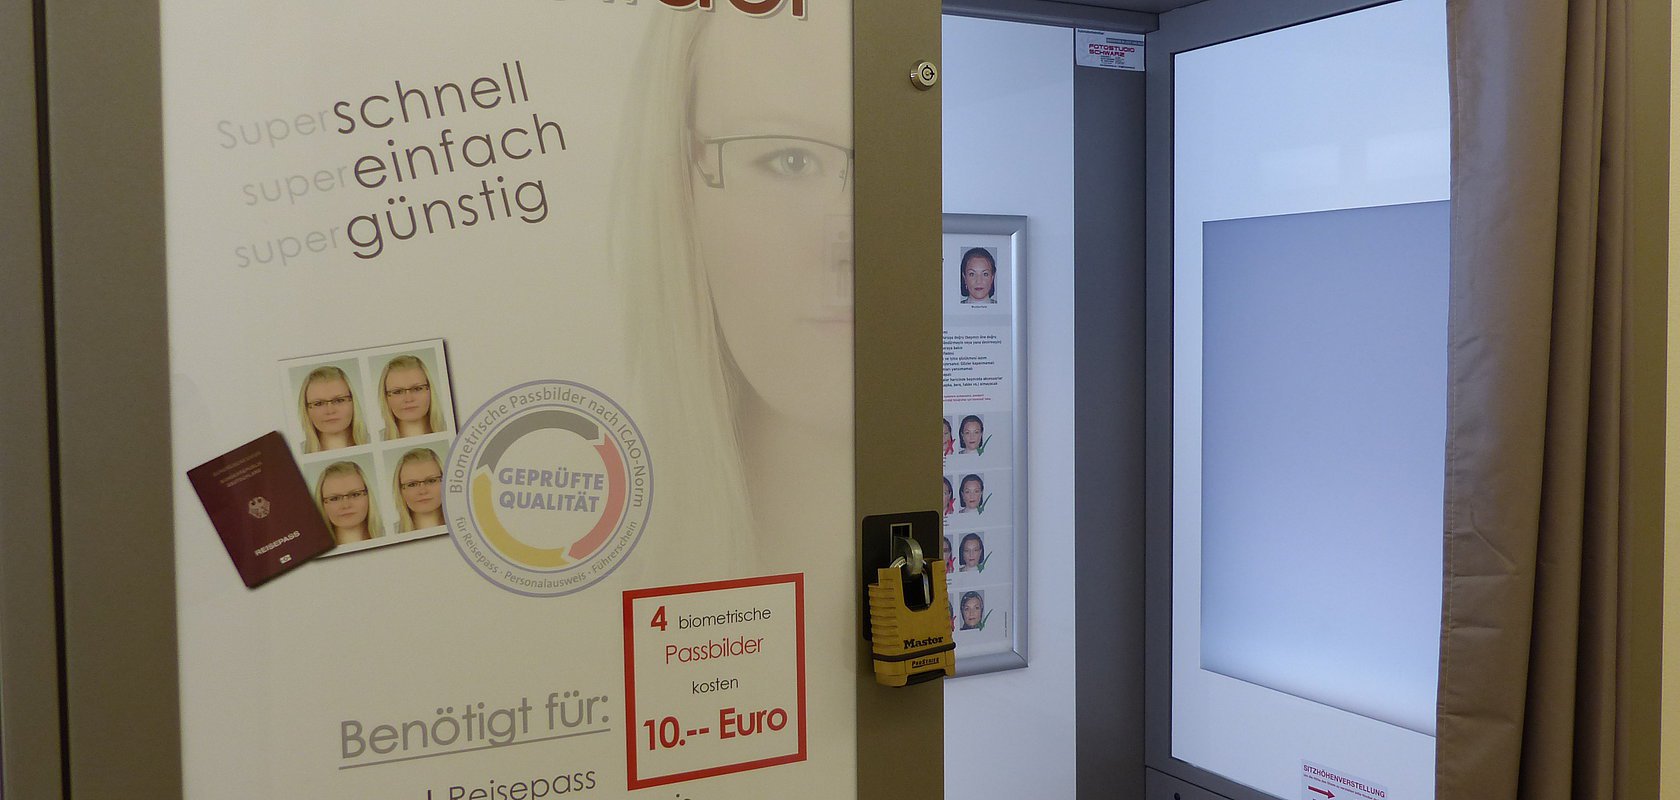 Biometrische Passbilder jetzt im Rathaus Monheim erhältlich